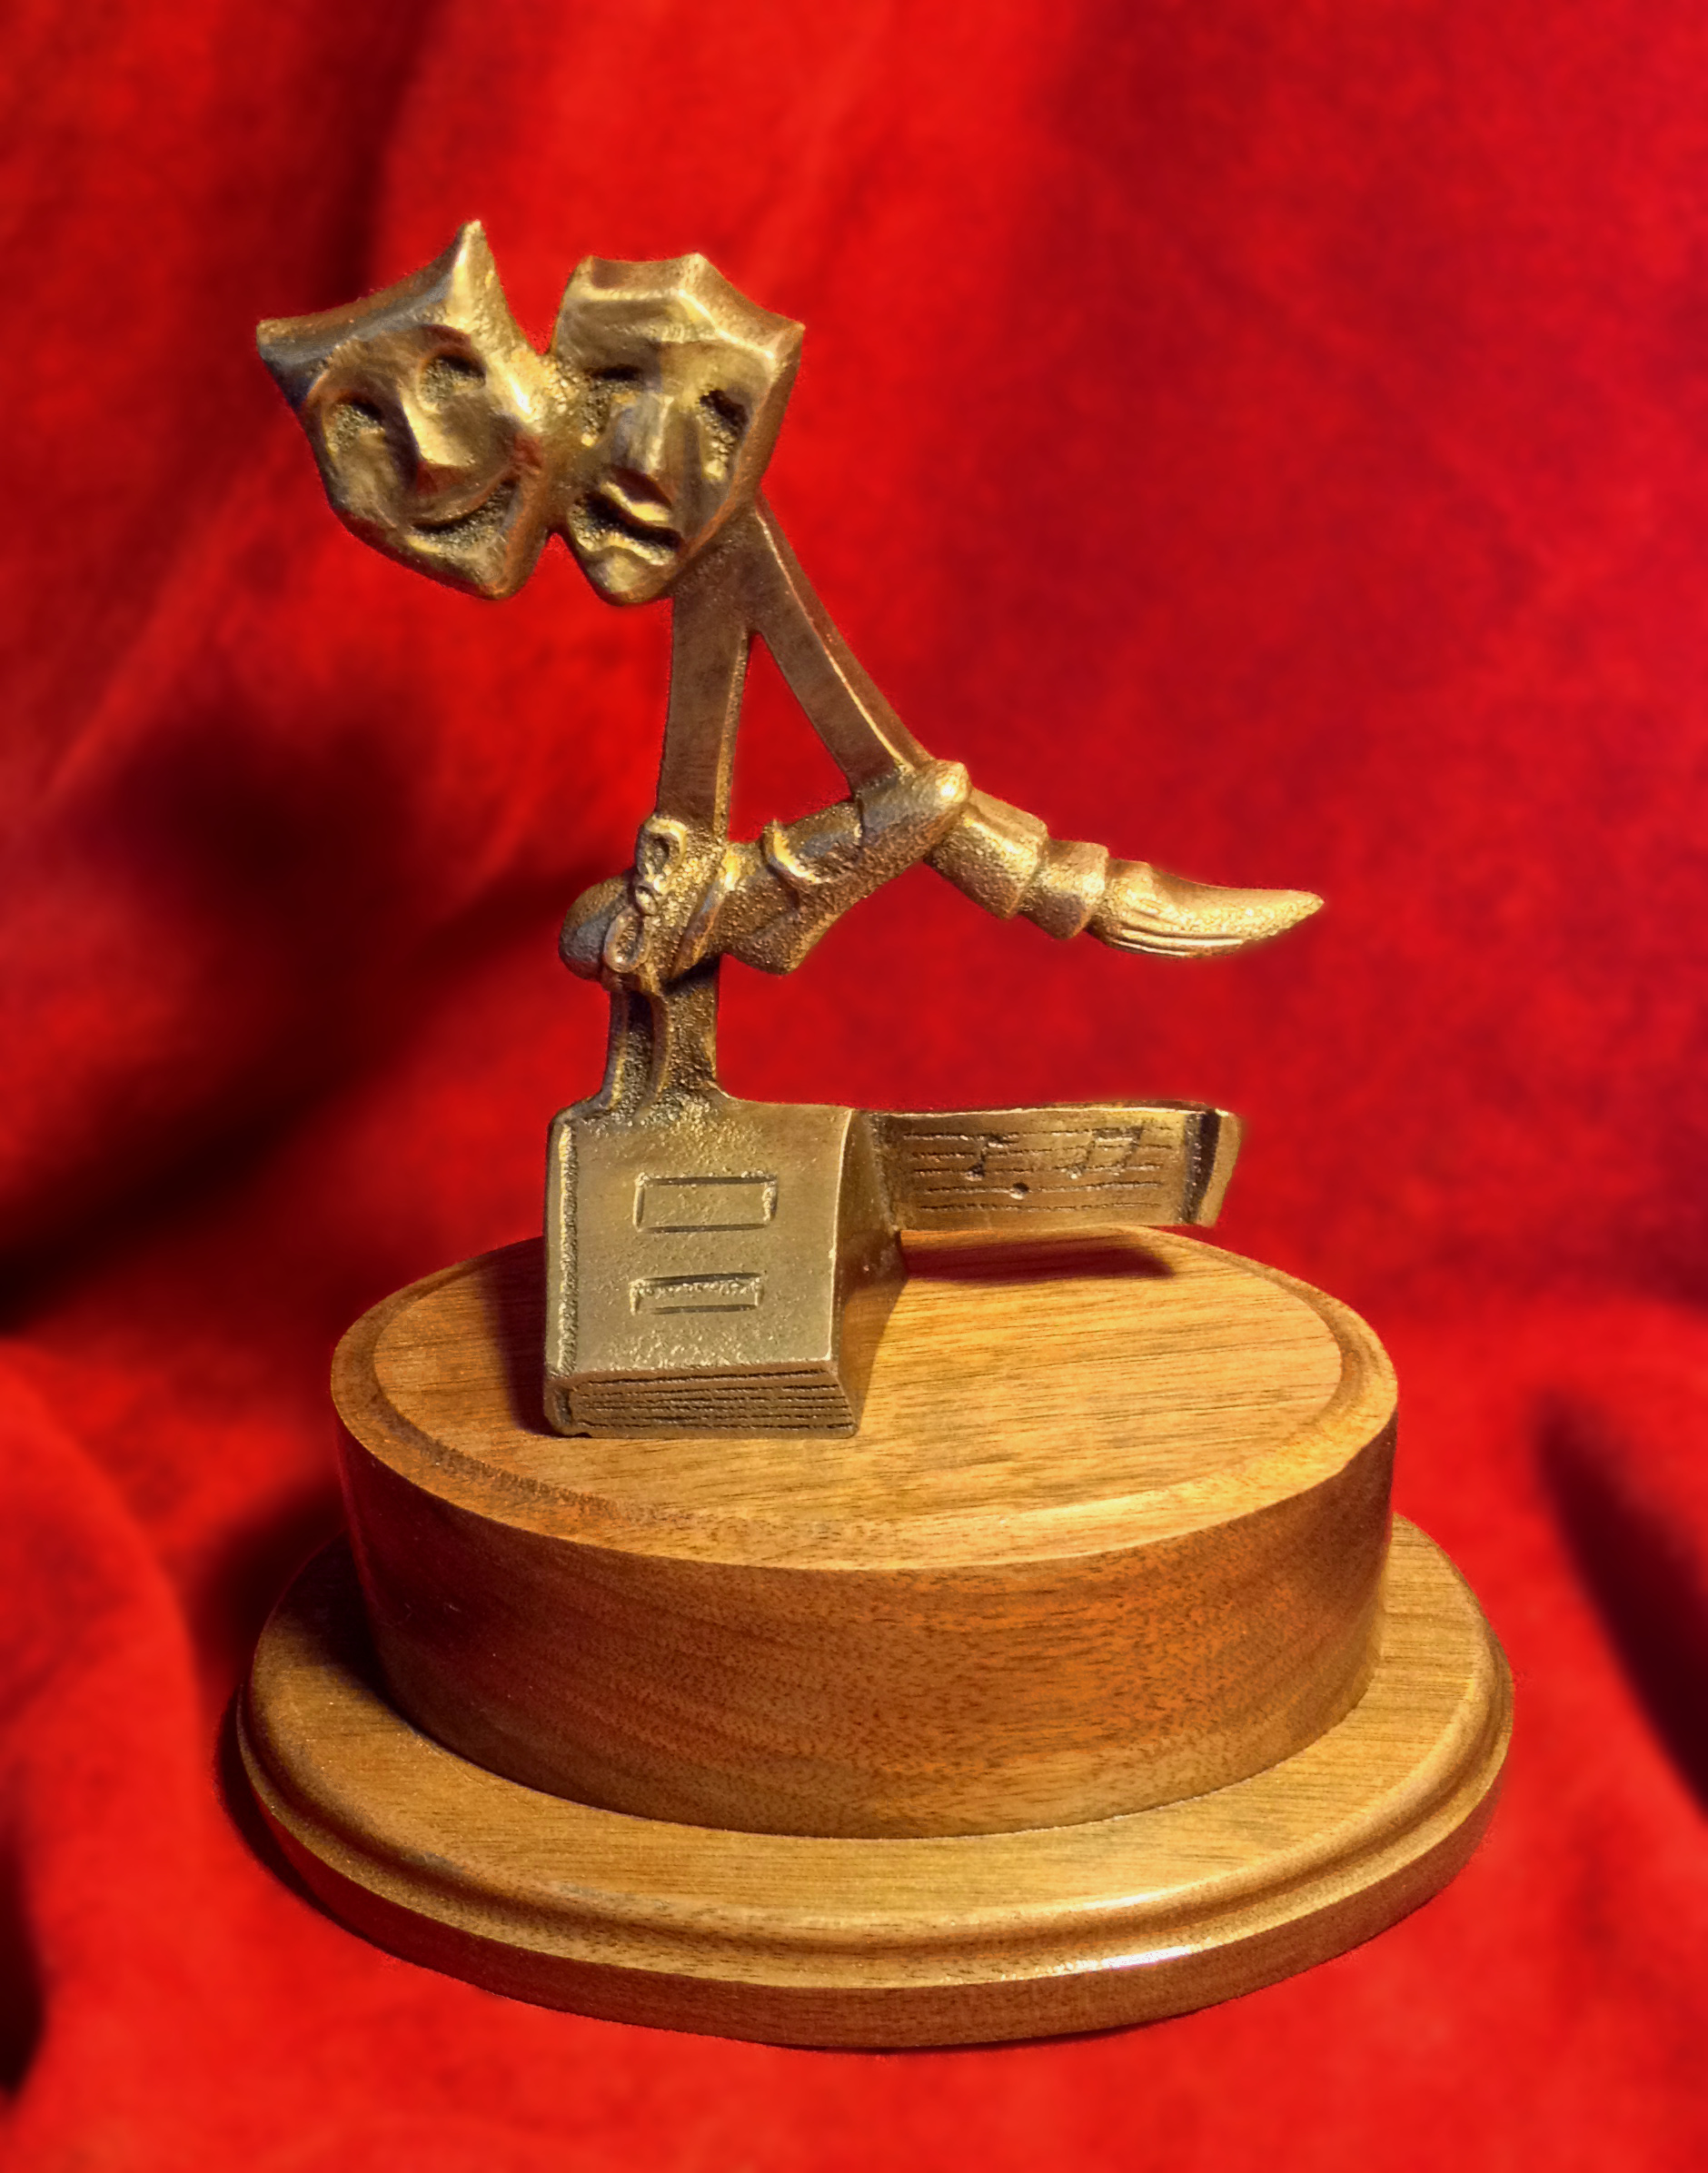  Rochester Ardee awards by Karl Unnasch